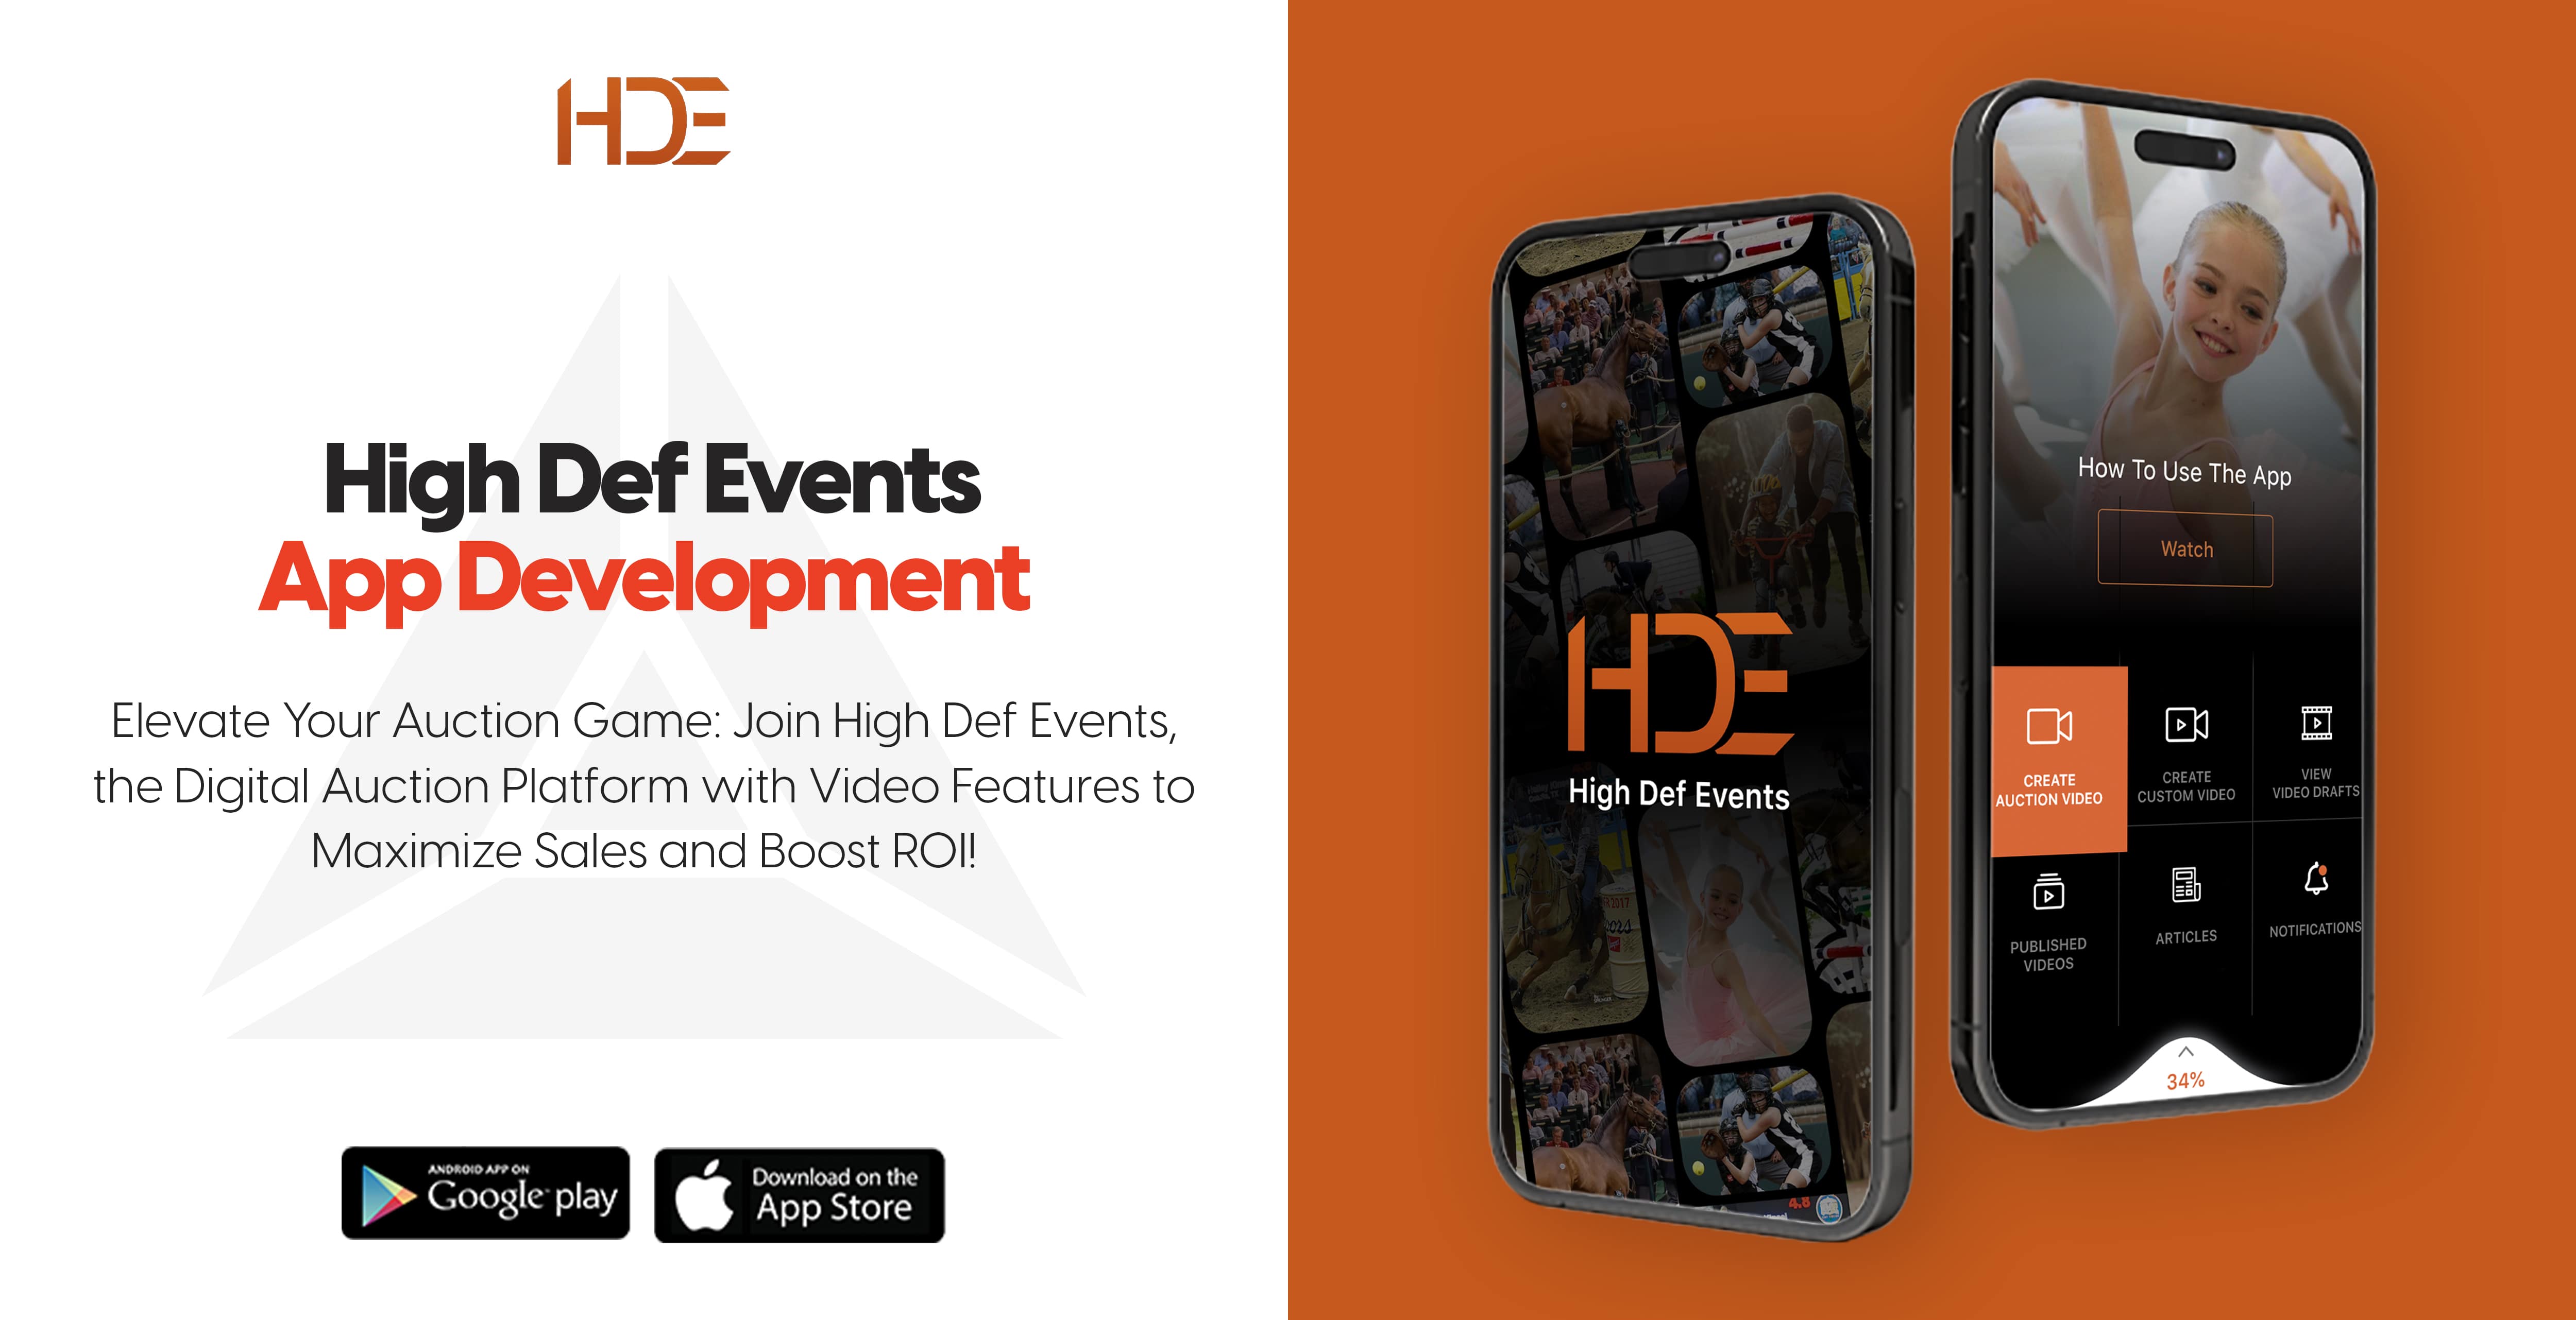 HDE App